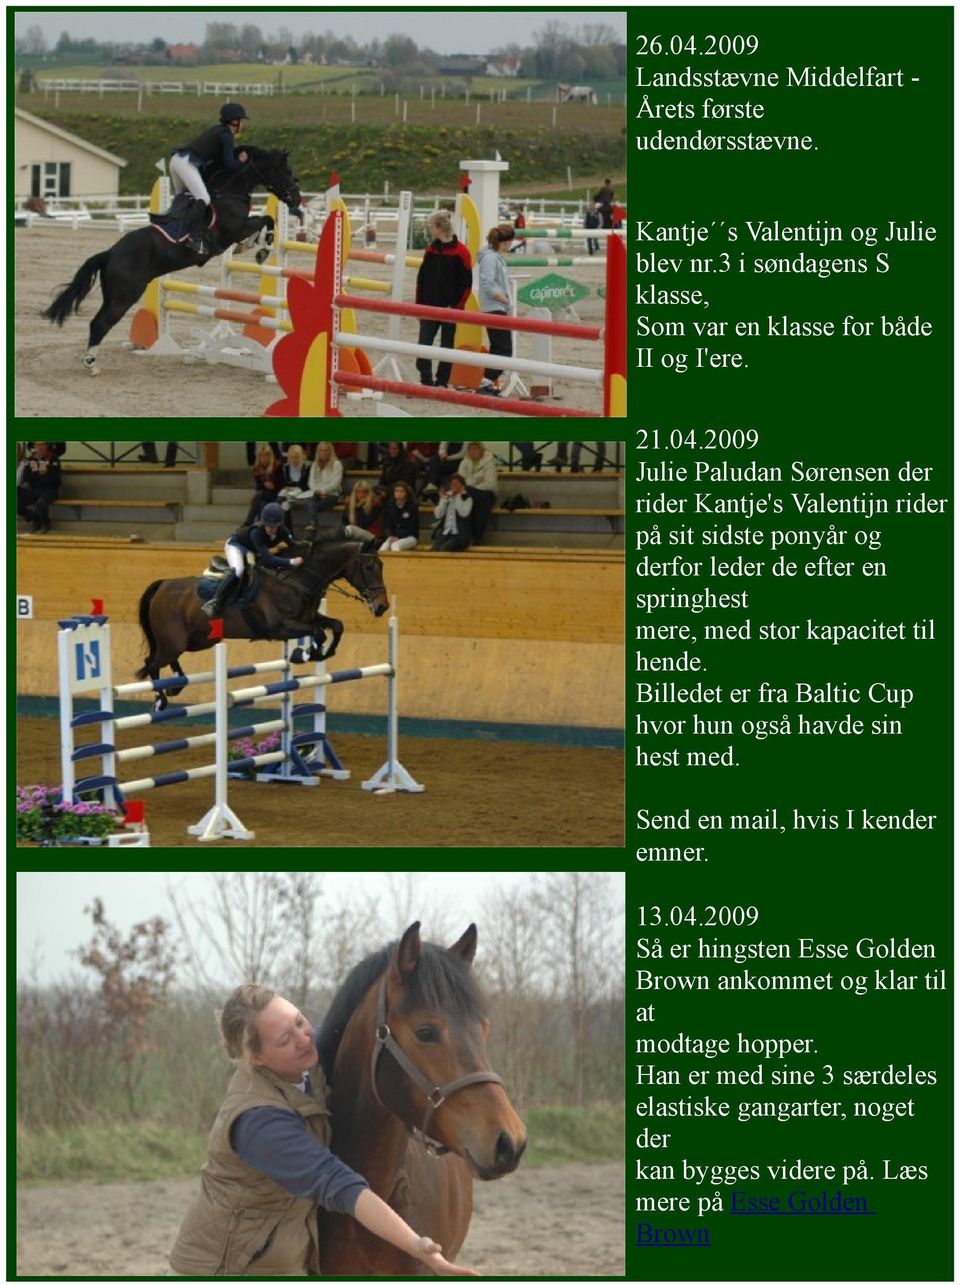 2009 Julie Paludan Sørensen der rider Kantje's Valentijn rider på sit sidste ponyår og derfor leder de efter en springhest mere, med stor kapacitet til